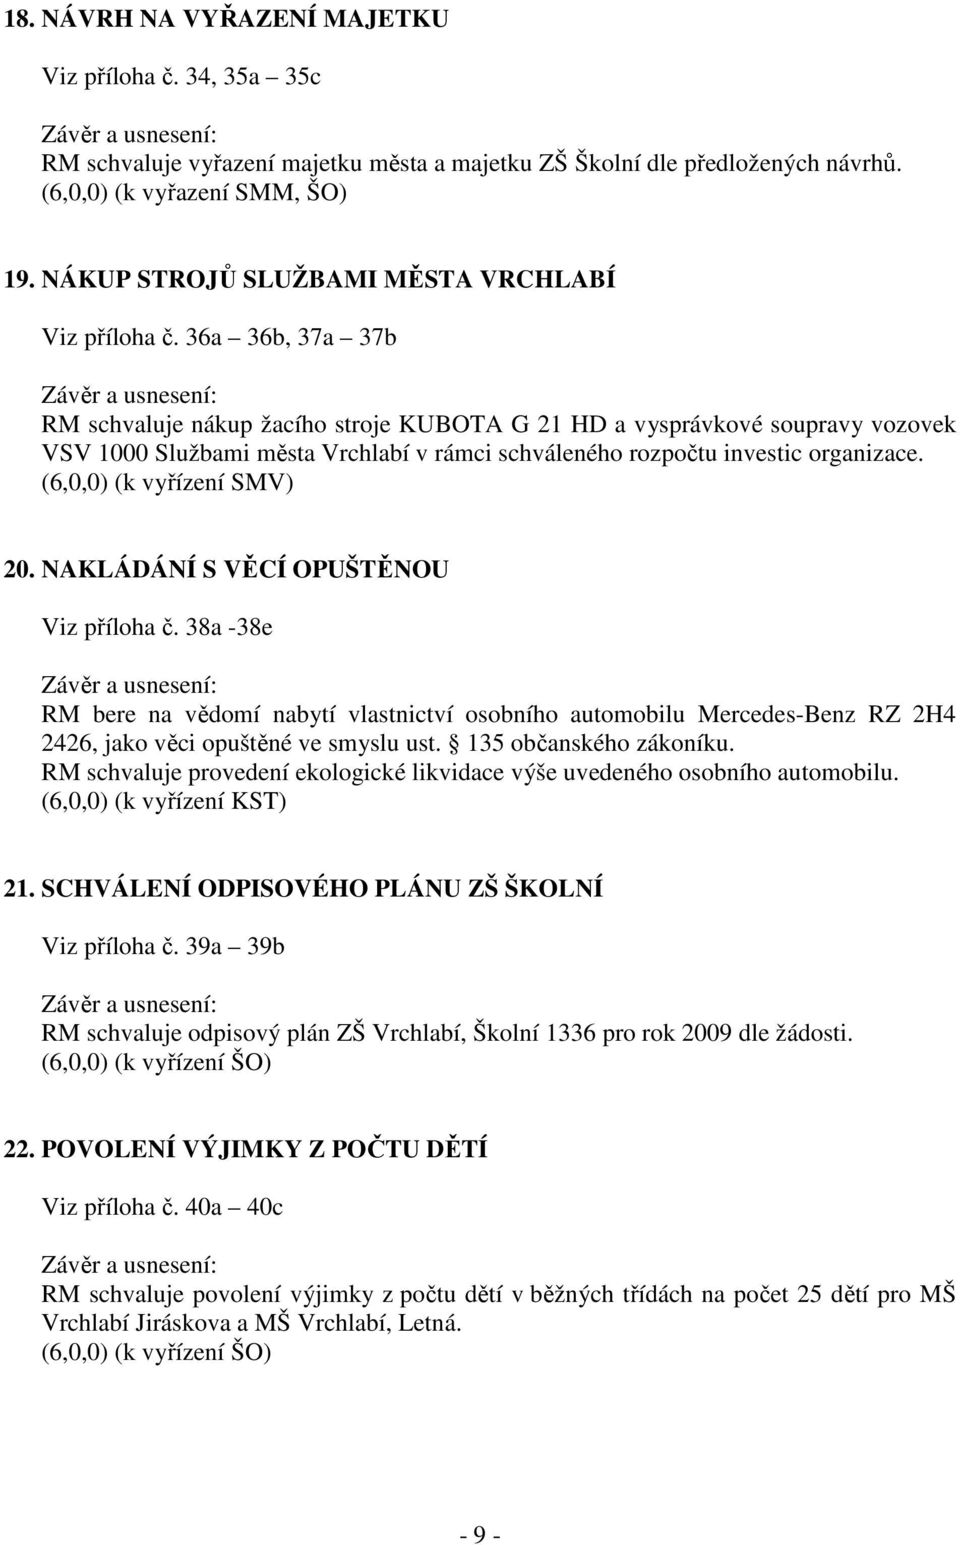 36a 36b, 37a 37b RM schvaluje nákup žacího stroje KUBOTA G 21 HD a vysprávkové soupravy vozovek VSV 1000 Službami města Vrchlabí v rámci schváleného rozpočtu investic organizace.